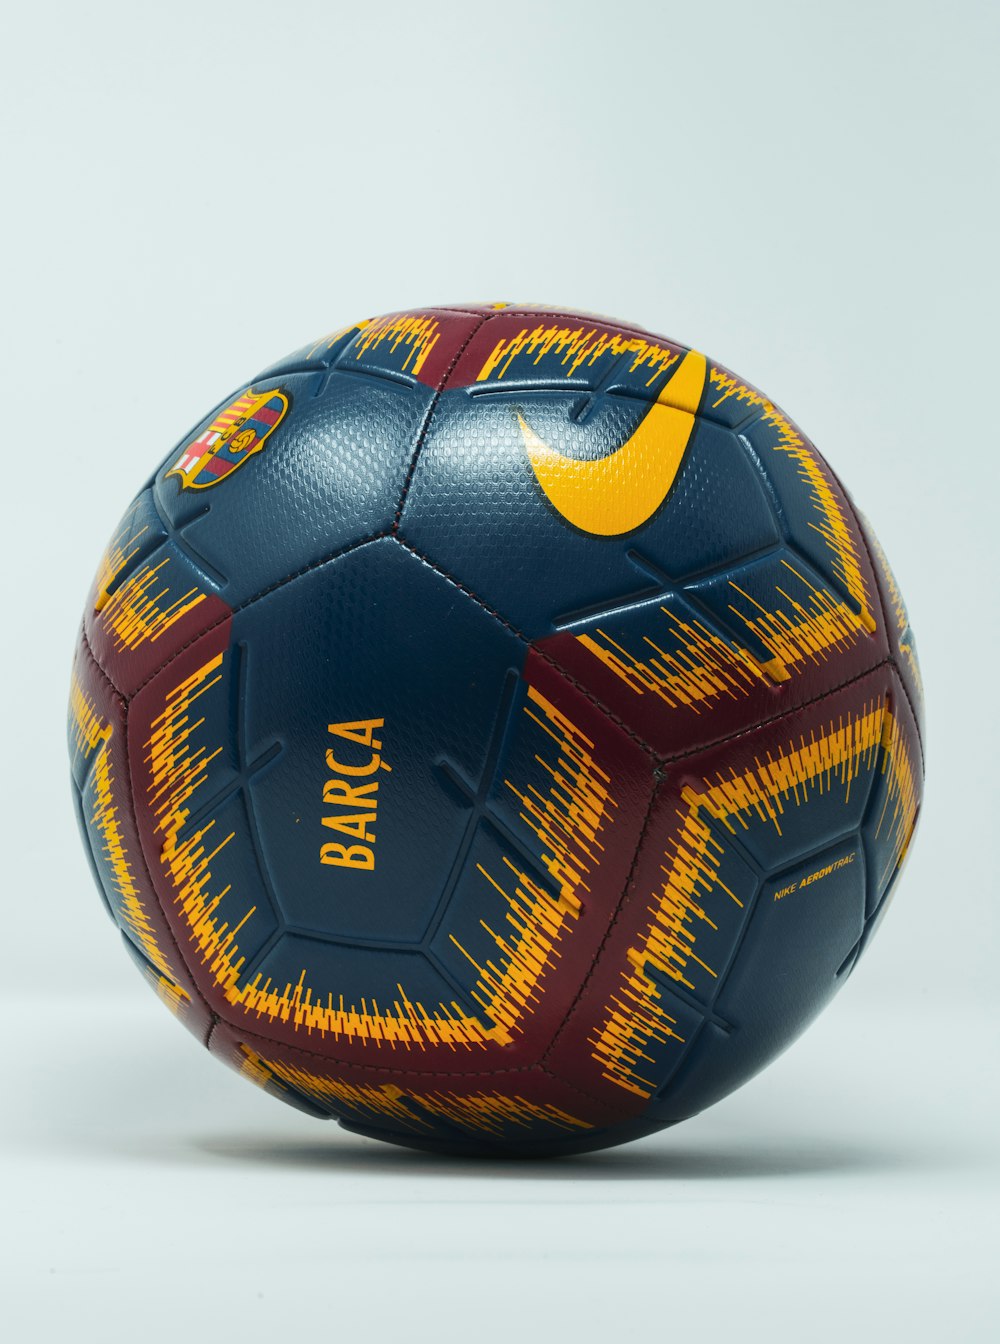 pallone da calcio Nike blu, marrone e giallo